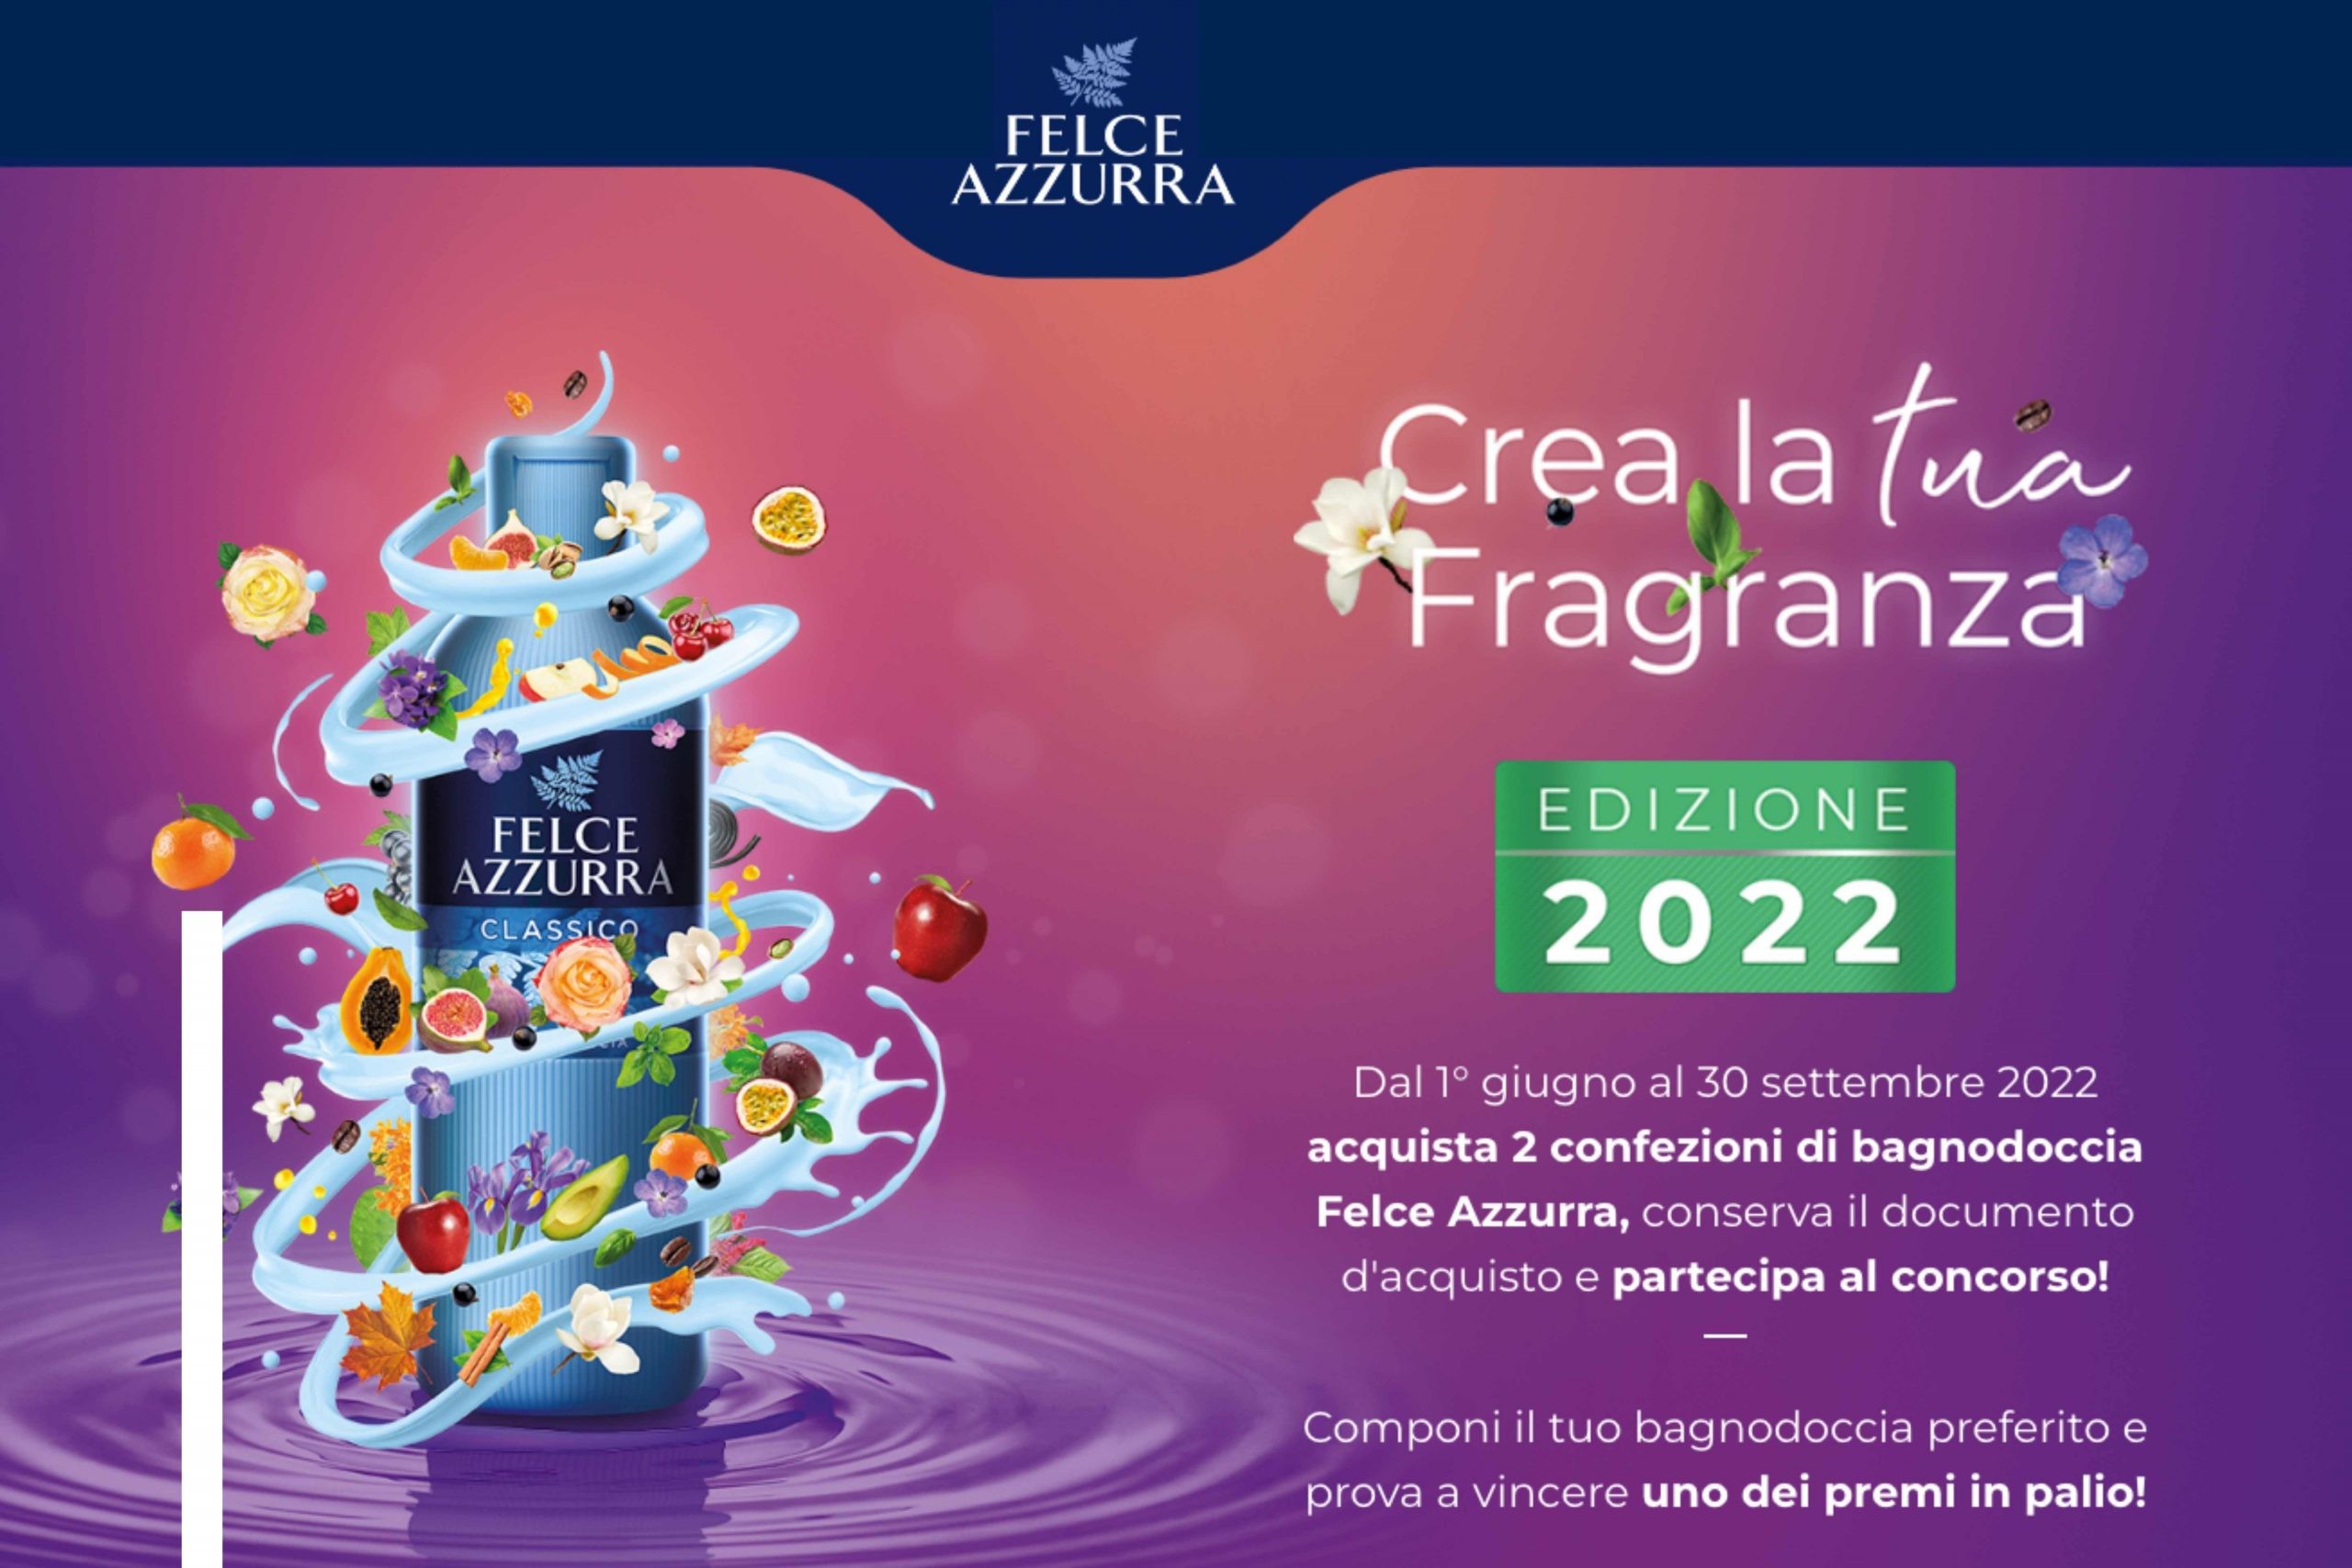 Concorso “Crea la tua fragranza 2022” by Felce Azzurra: come vincere buoni spesa da 100€ e il bagno dei tuoi sogni